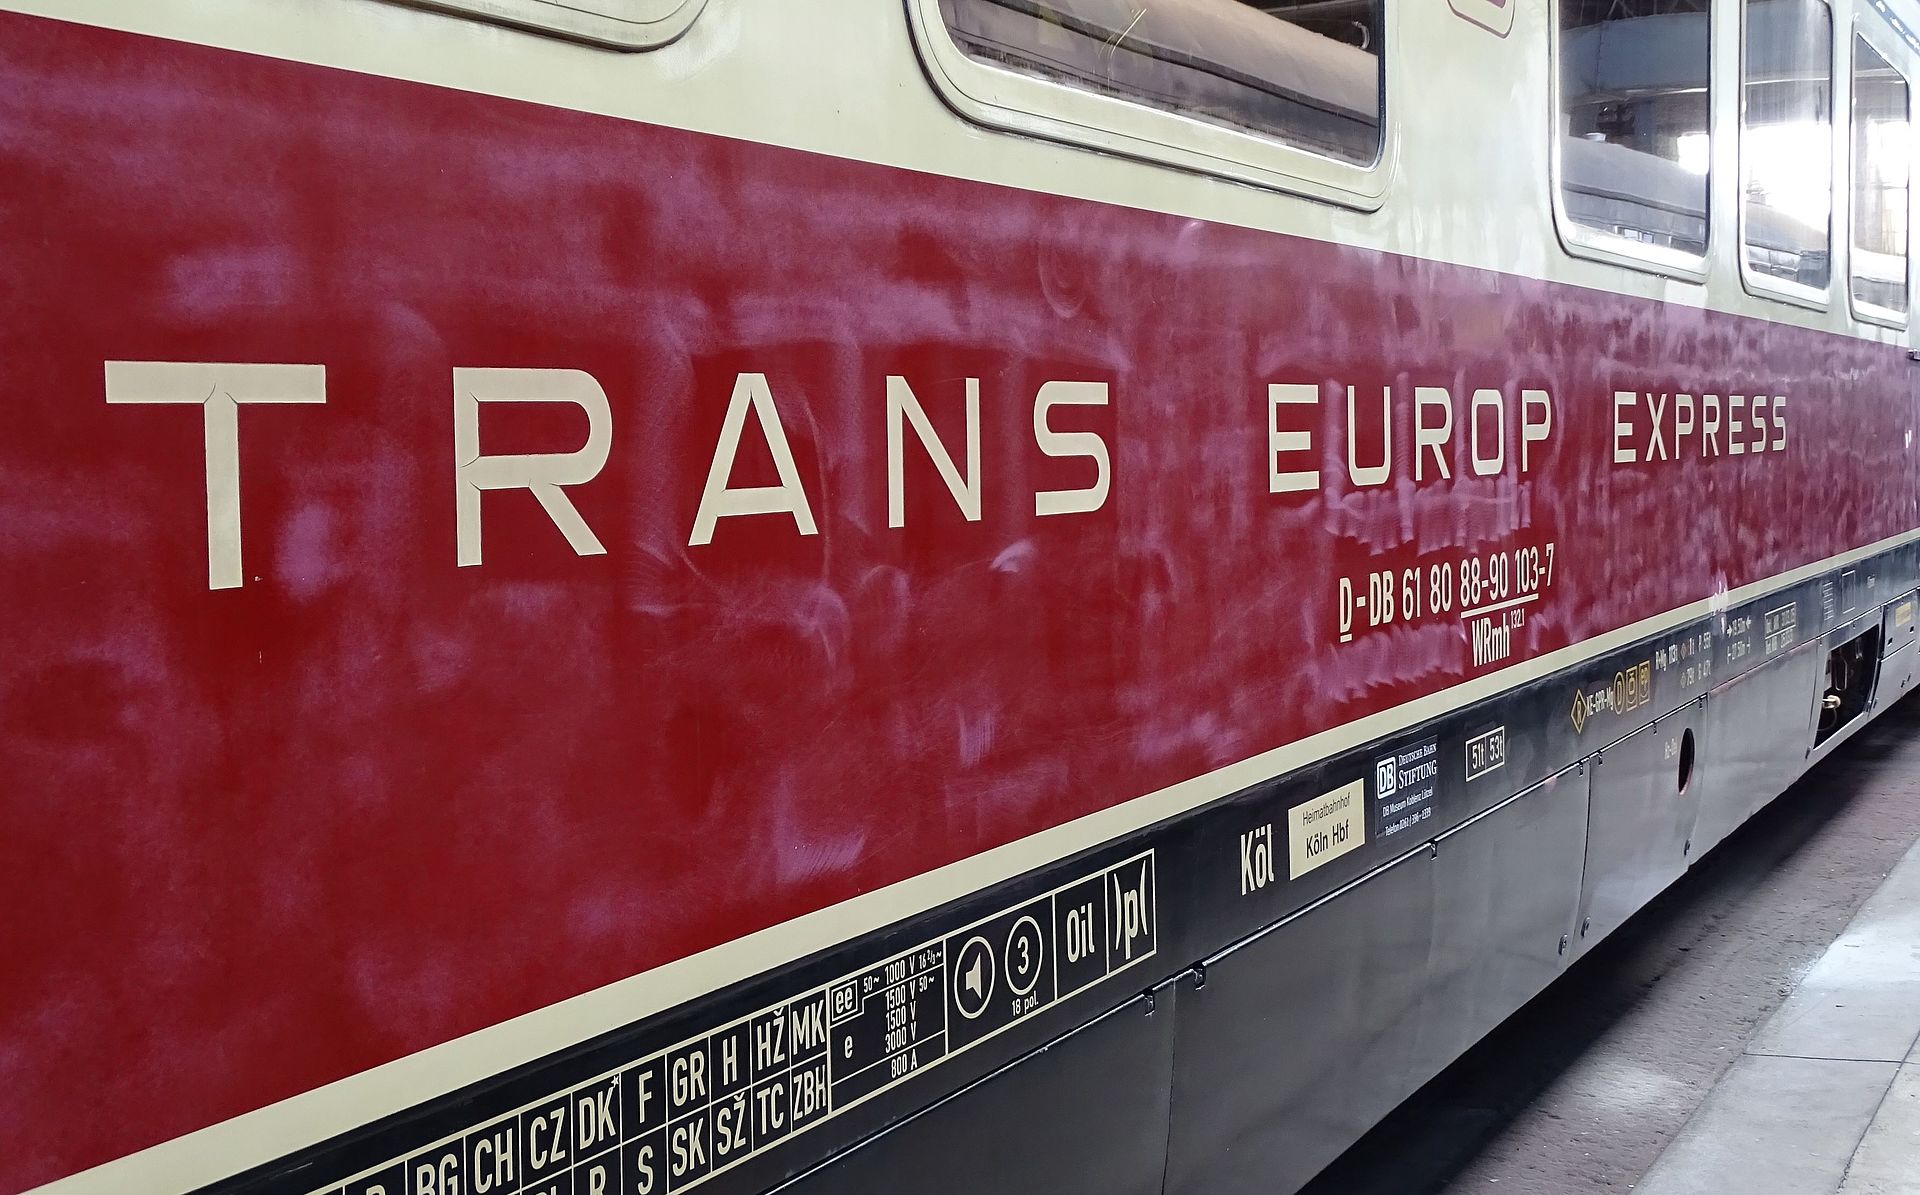 Trans Europ Express